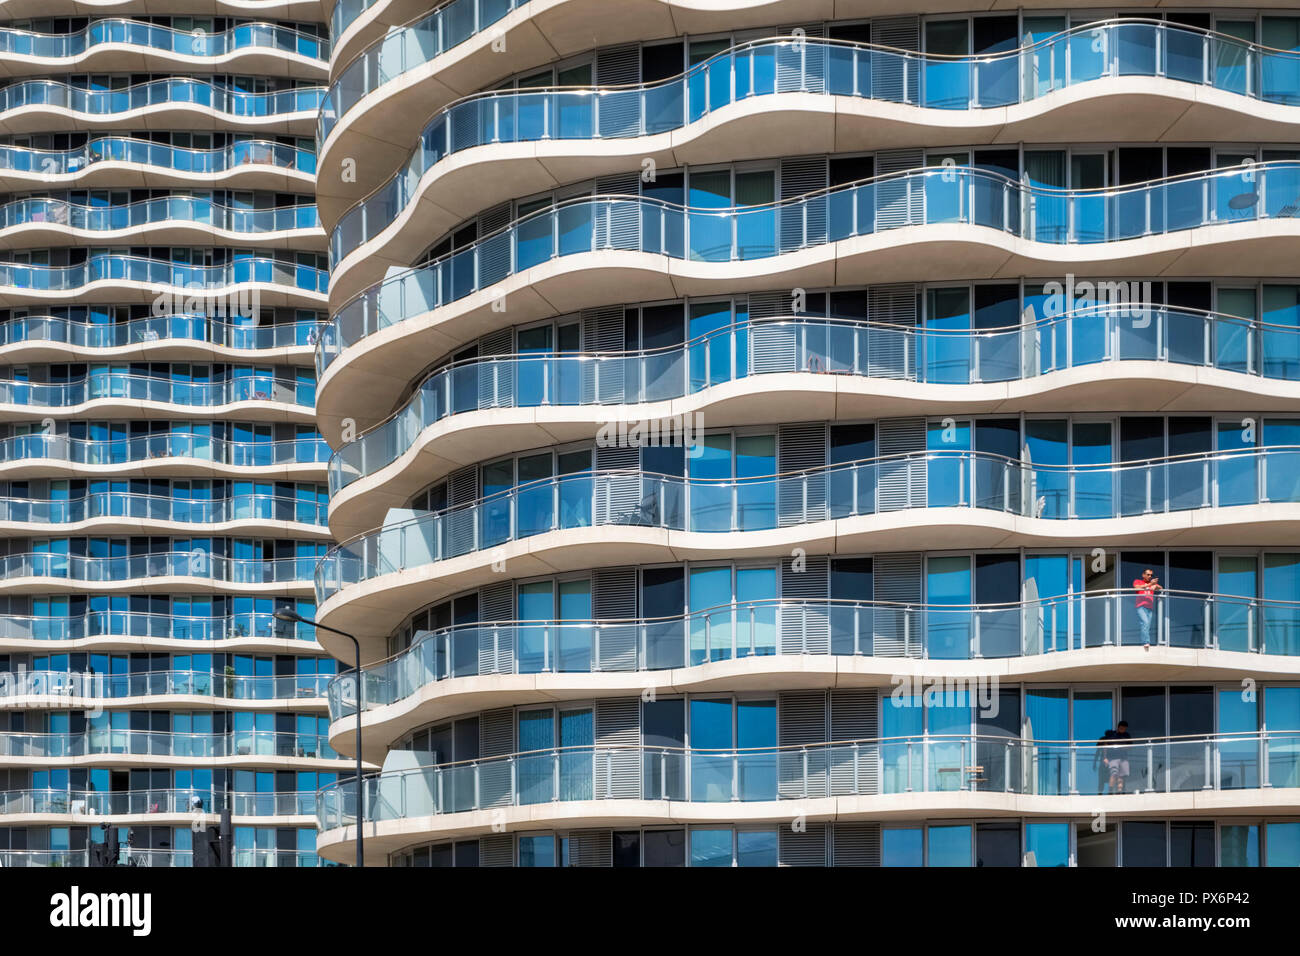 Detalle de edificios de apartamentos de gran altura en el Royal Victoria Dock, Londres, Inglaterra, Reino Unido, arquitectura moderna Foto de stock